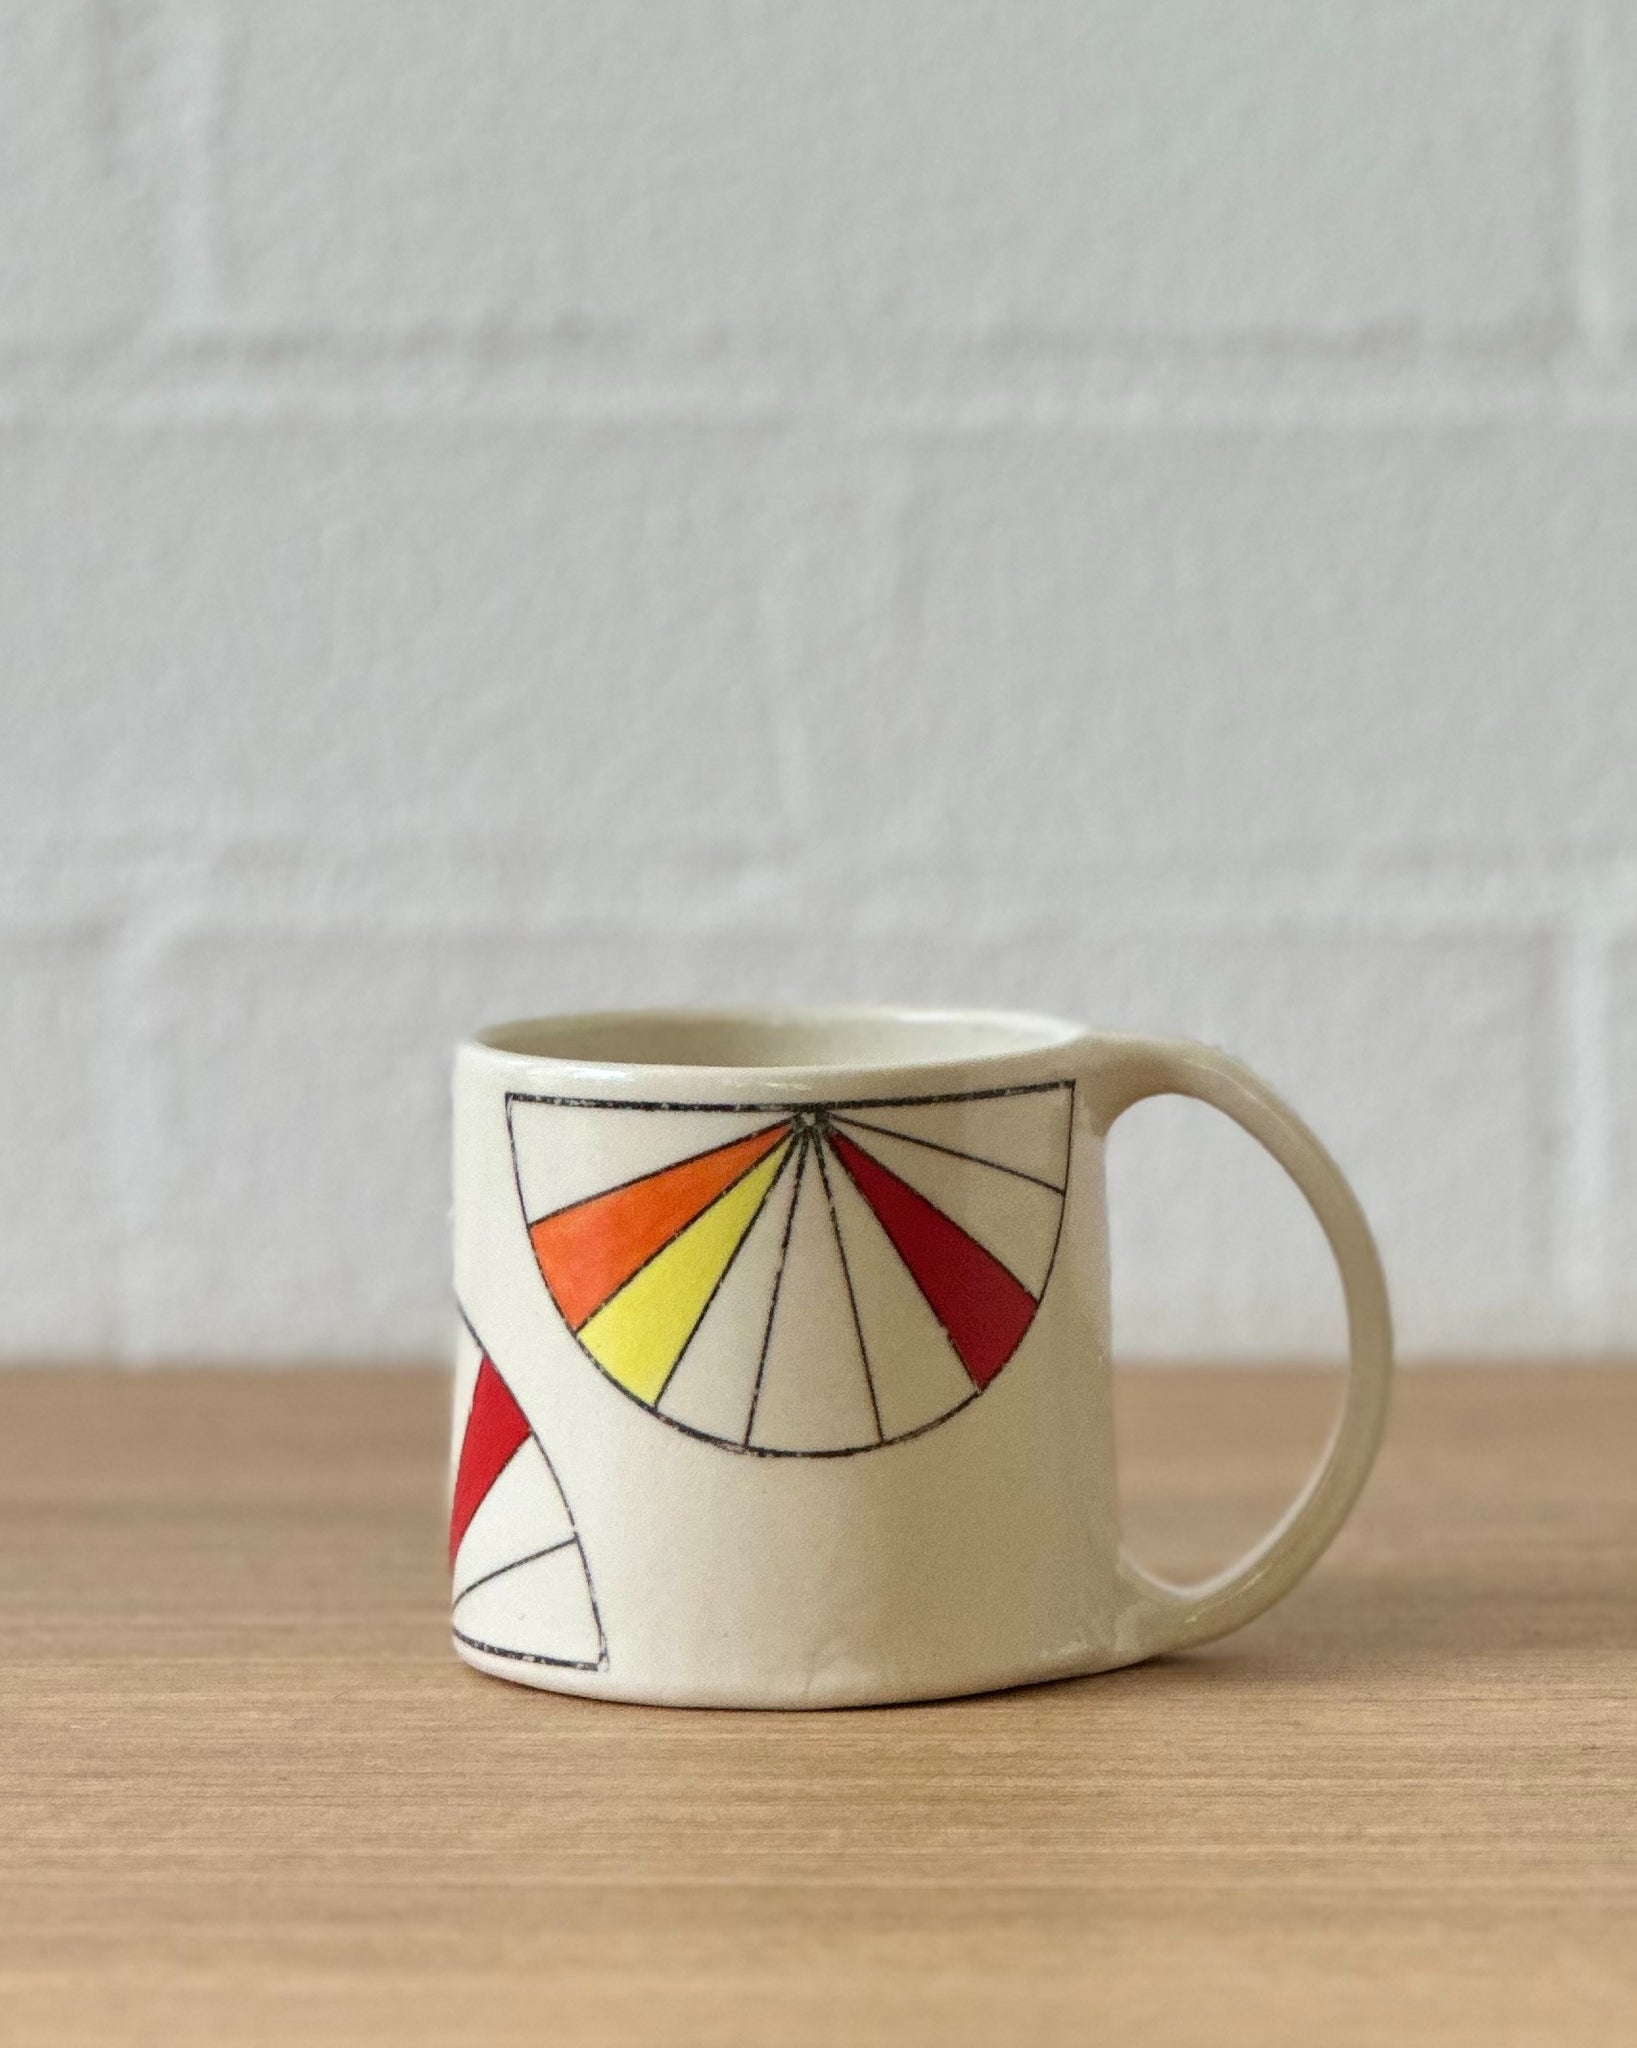 fan mug (orange, yellow and red) - regular